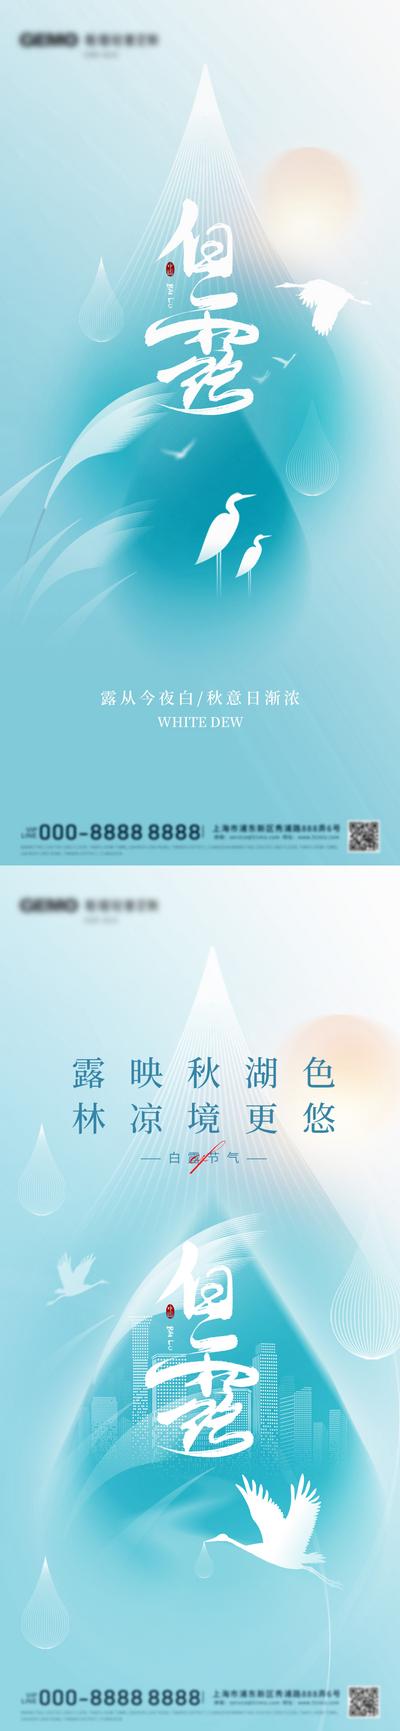 【南门网】广告 海报 节气 白露 白鹭 简约 系列 品质